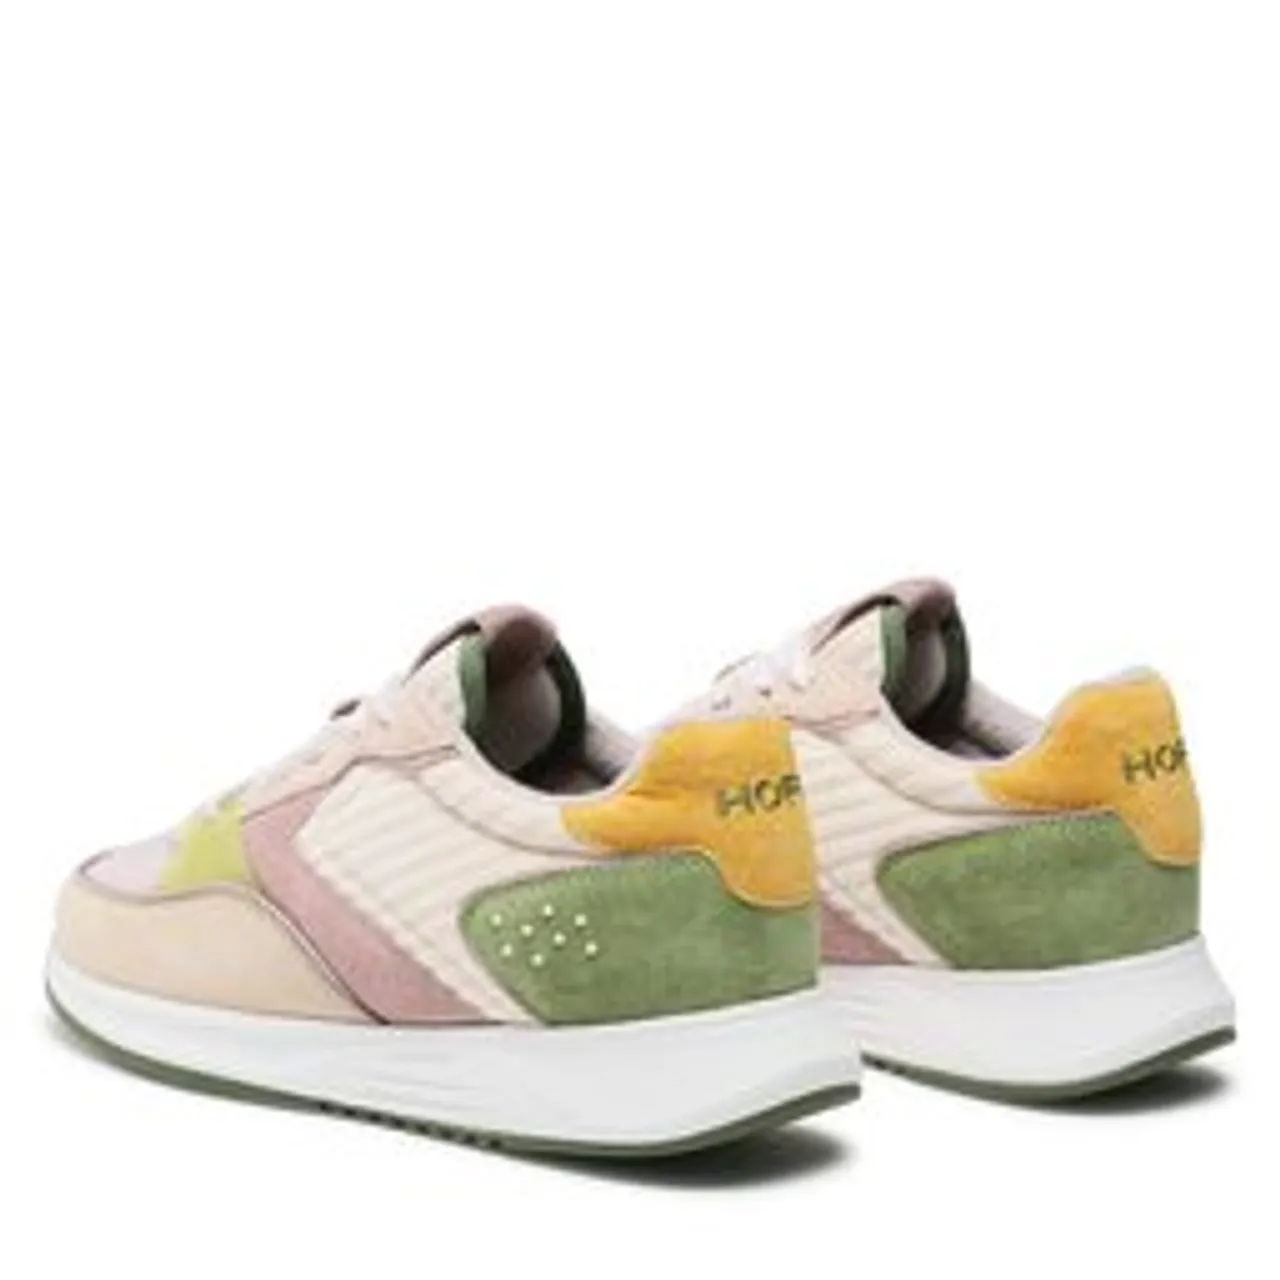 Sneakers HOFF Norrebro 22301001 Green 300